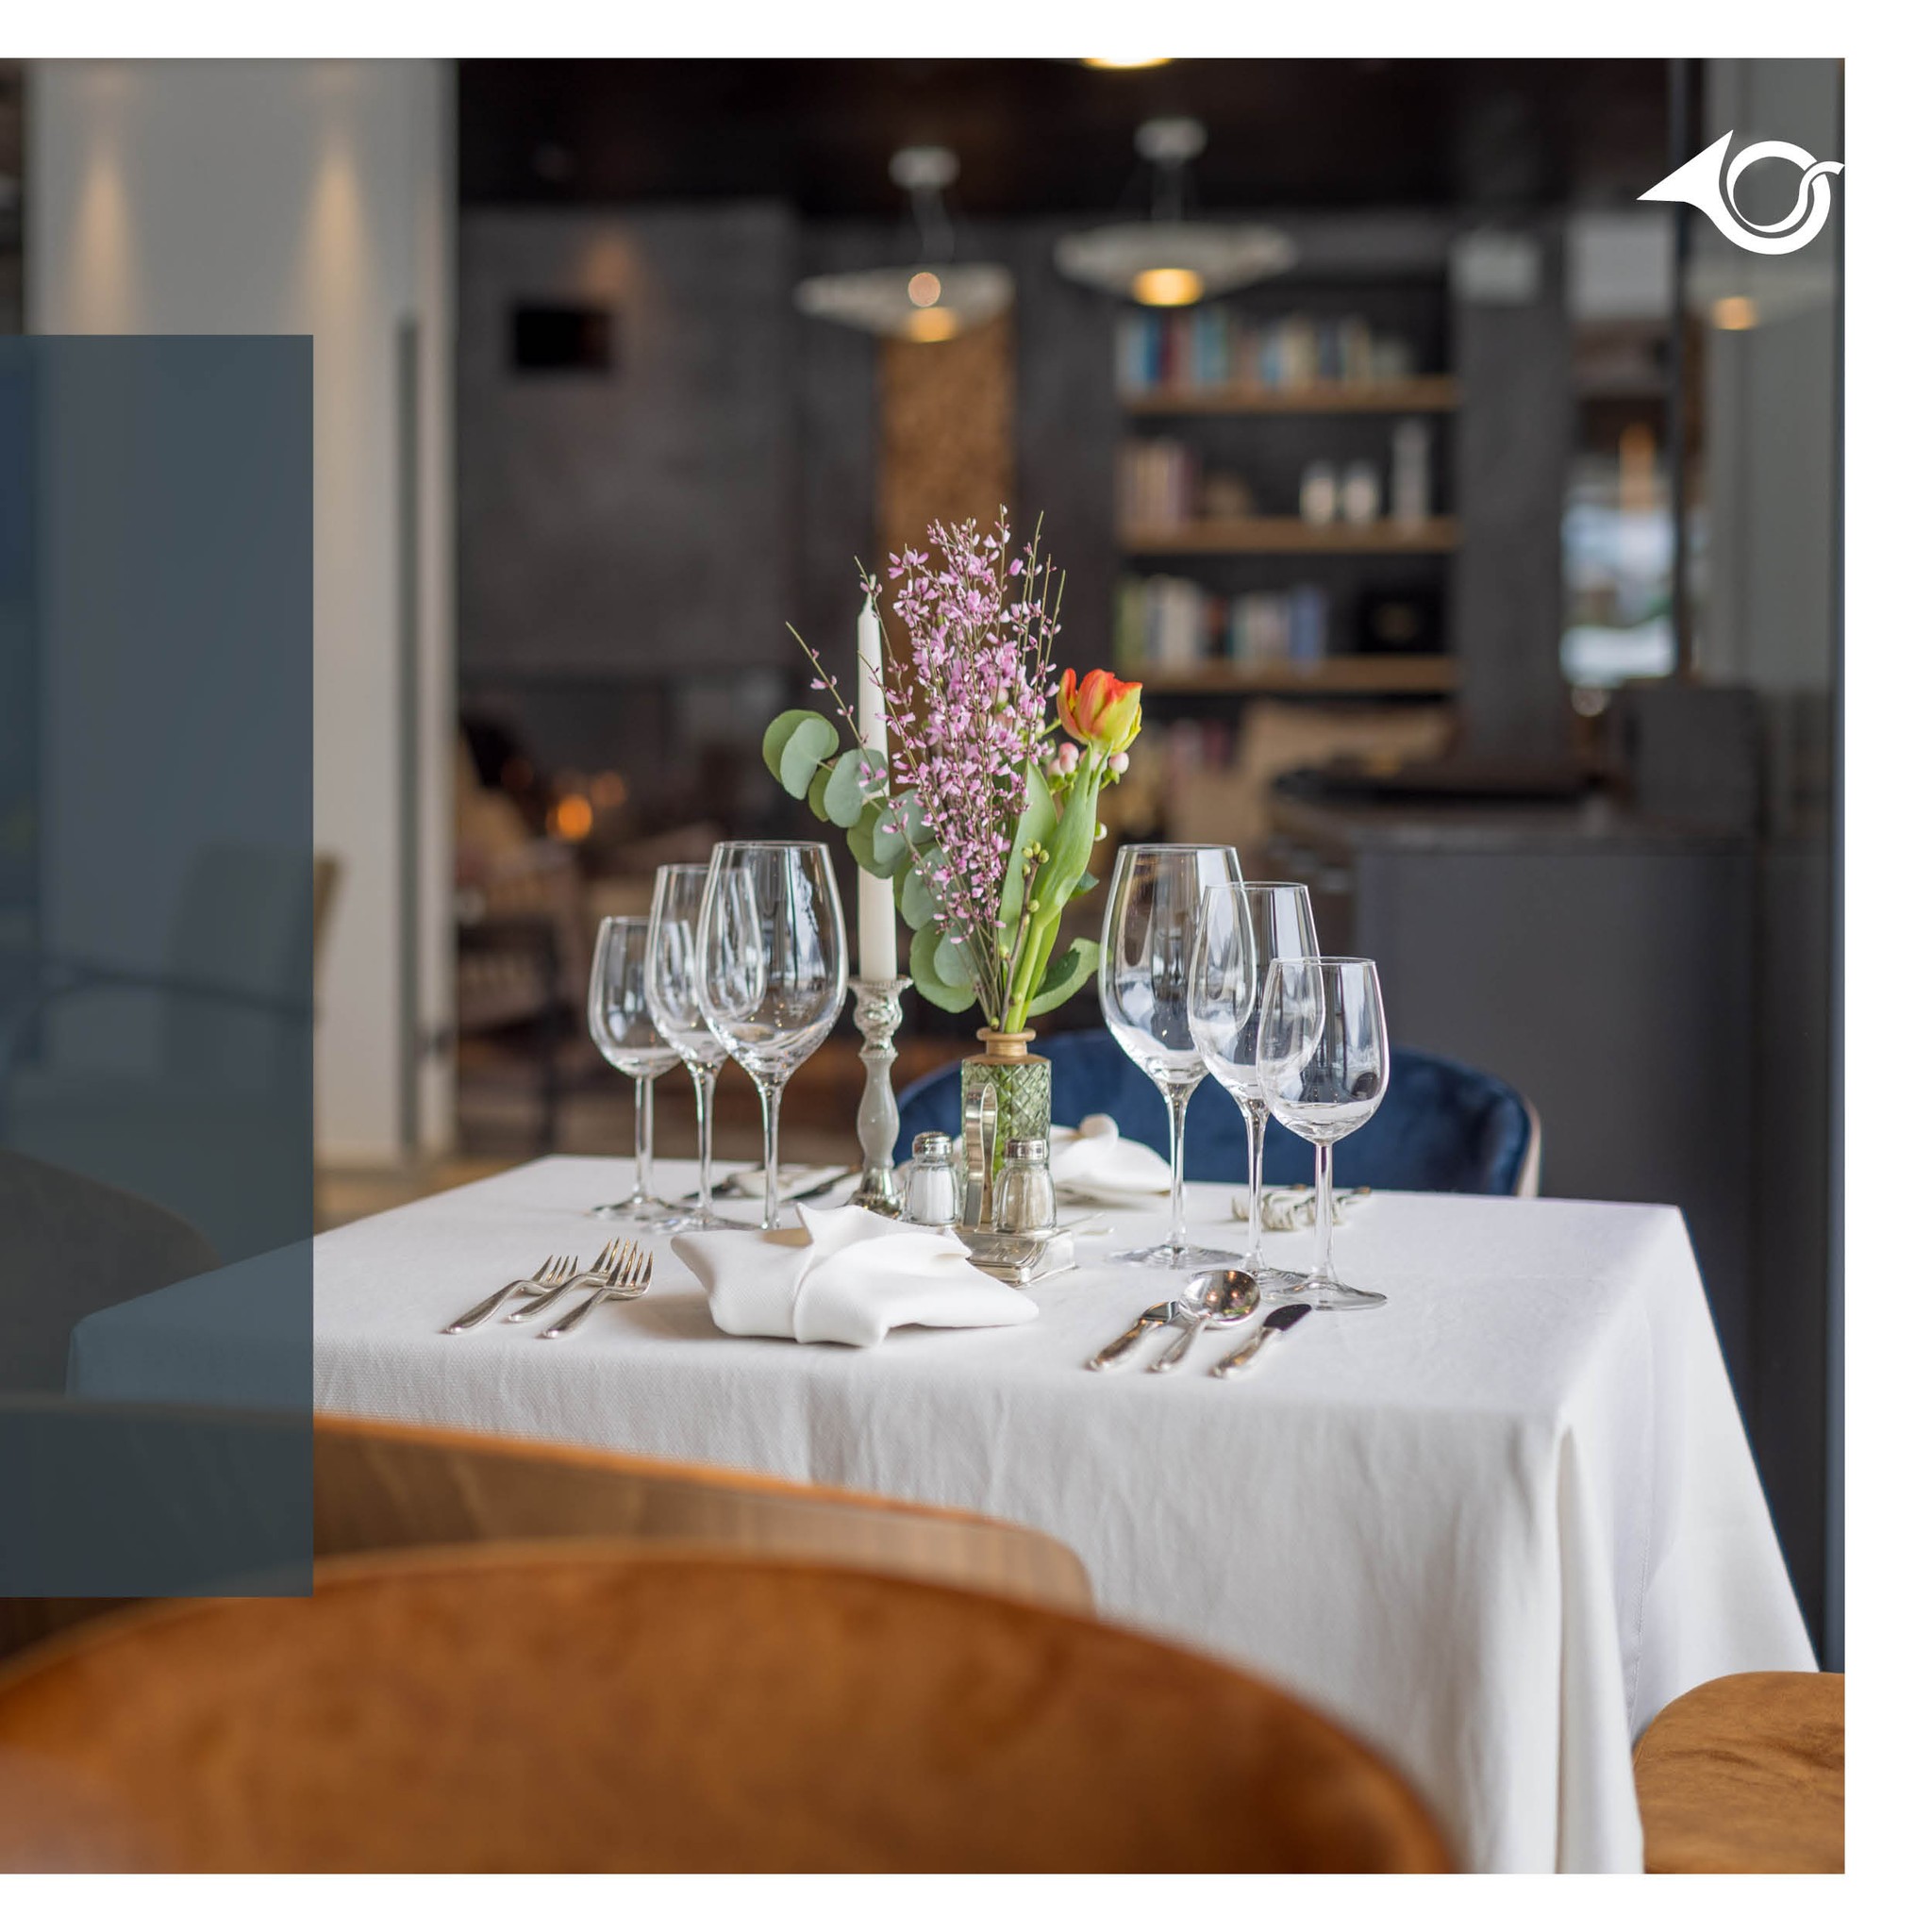 🌸 Ein Ort zum Verweilen 🌸
Unsere PostBar heißt euch von 11 – 23 Uhr willkommen. Reserviert gleich einen Tisch um euch mit Fleisch- und Fischspezialitäten, italienischer Pizza und feinen Drinks verwöhnen zu lassen. 🥂

#postbar #postbarbistro #postamsee #postamseeachensee #seeyouthere #bergundsee #tirol #austria #achensee #bestoftirol #ilovetirol #visitaustria #visittyrol #auszeit #winelovers …